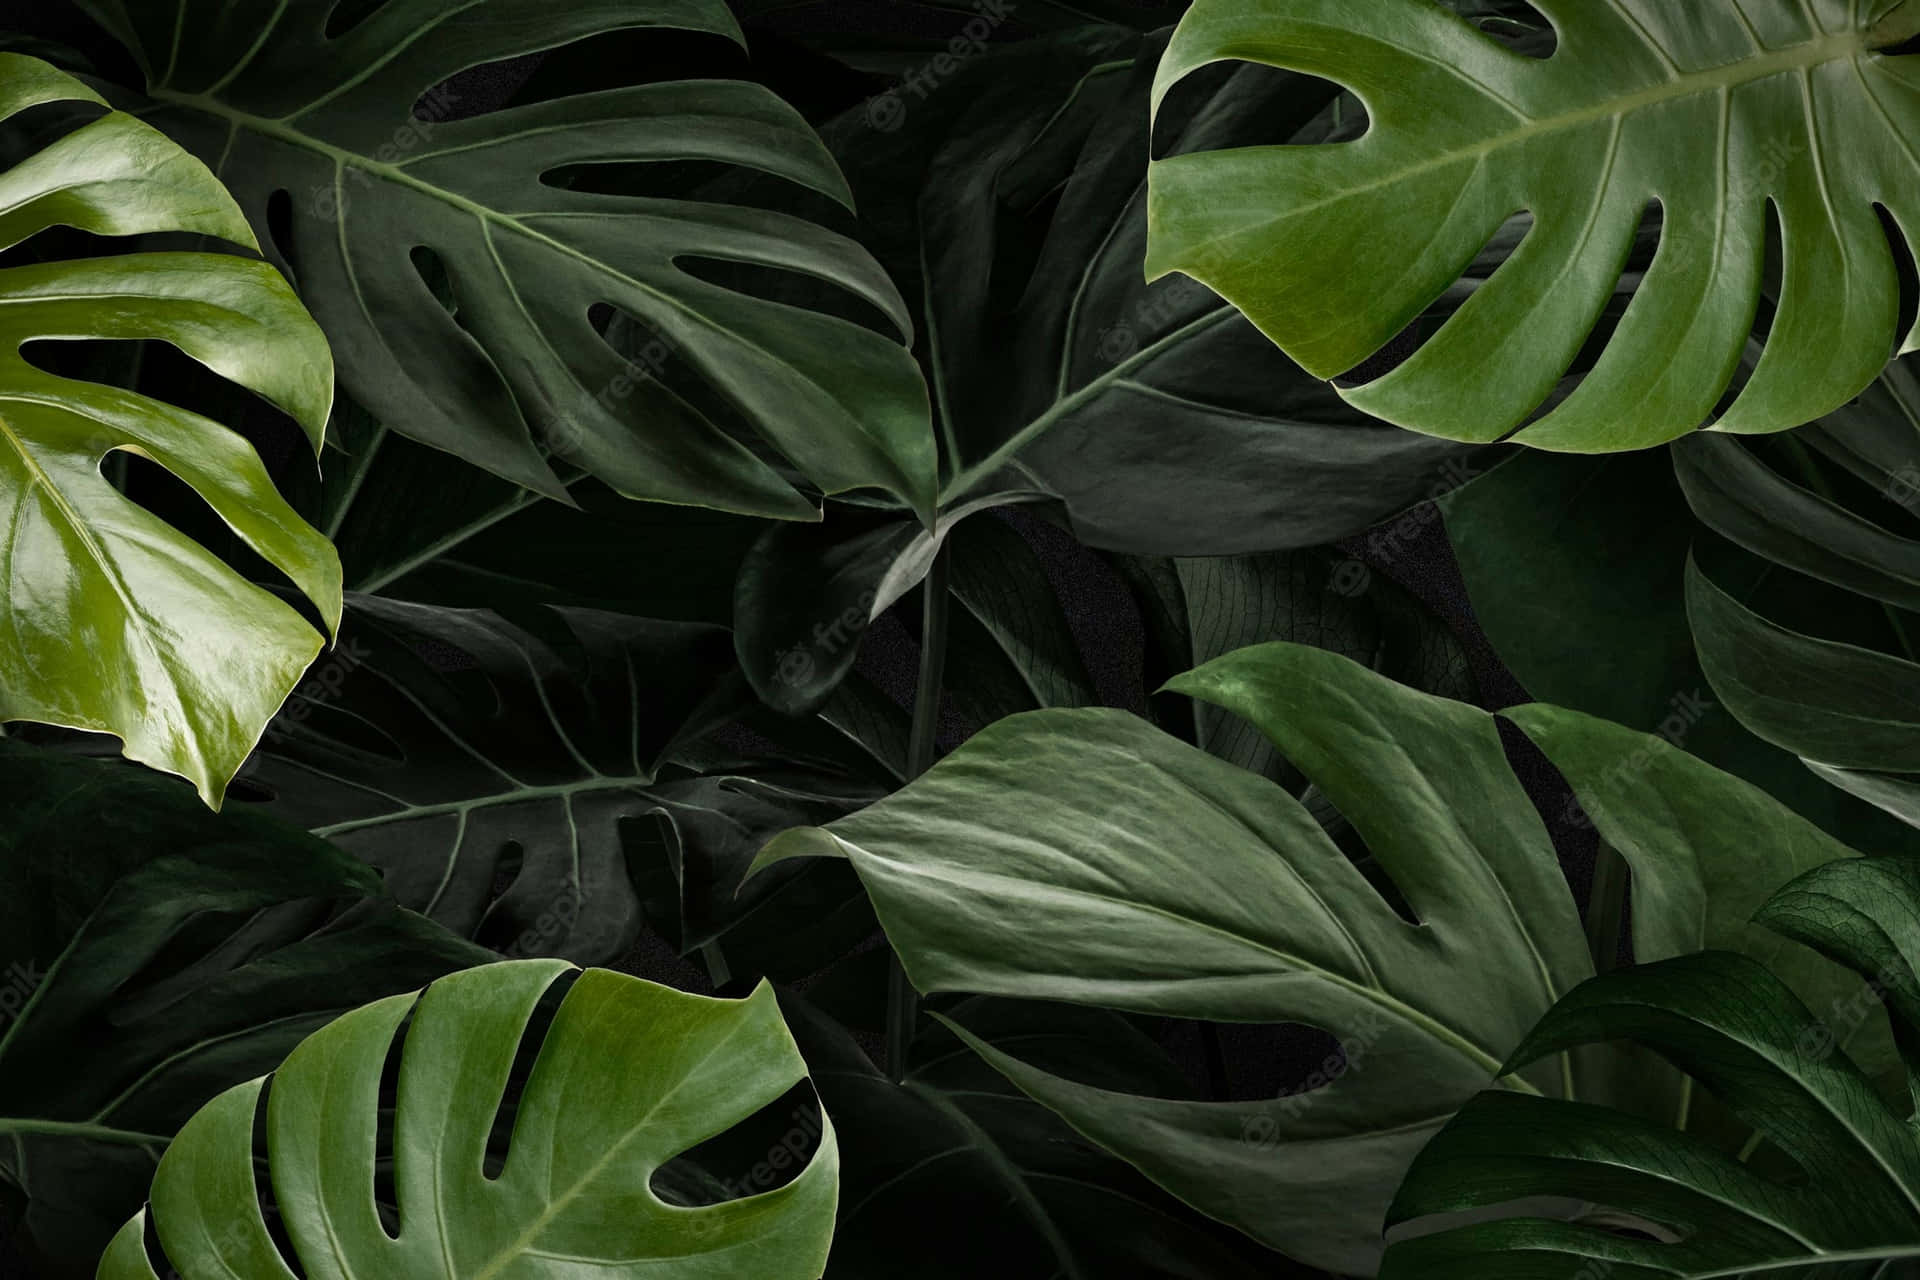 Hình nền lá monstera sẽ khiến bạn liên tưởng đến những khu rừng nhiệt đới và những kỳ quan thiên nhiên đầy mê hoặc. Hãy cùng đắm mình trong một không gian xanh mát và ấm áp với những chiếc lá monstera tràn đầy sức sống.